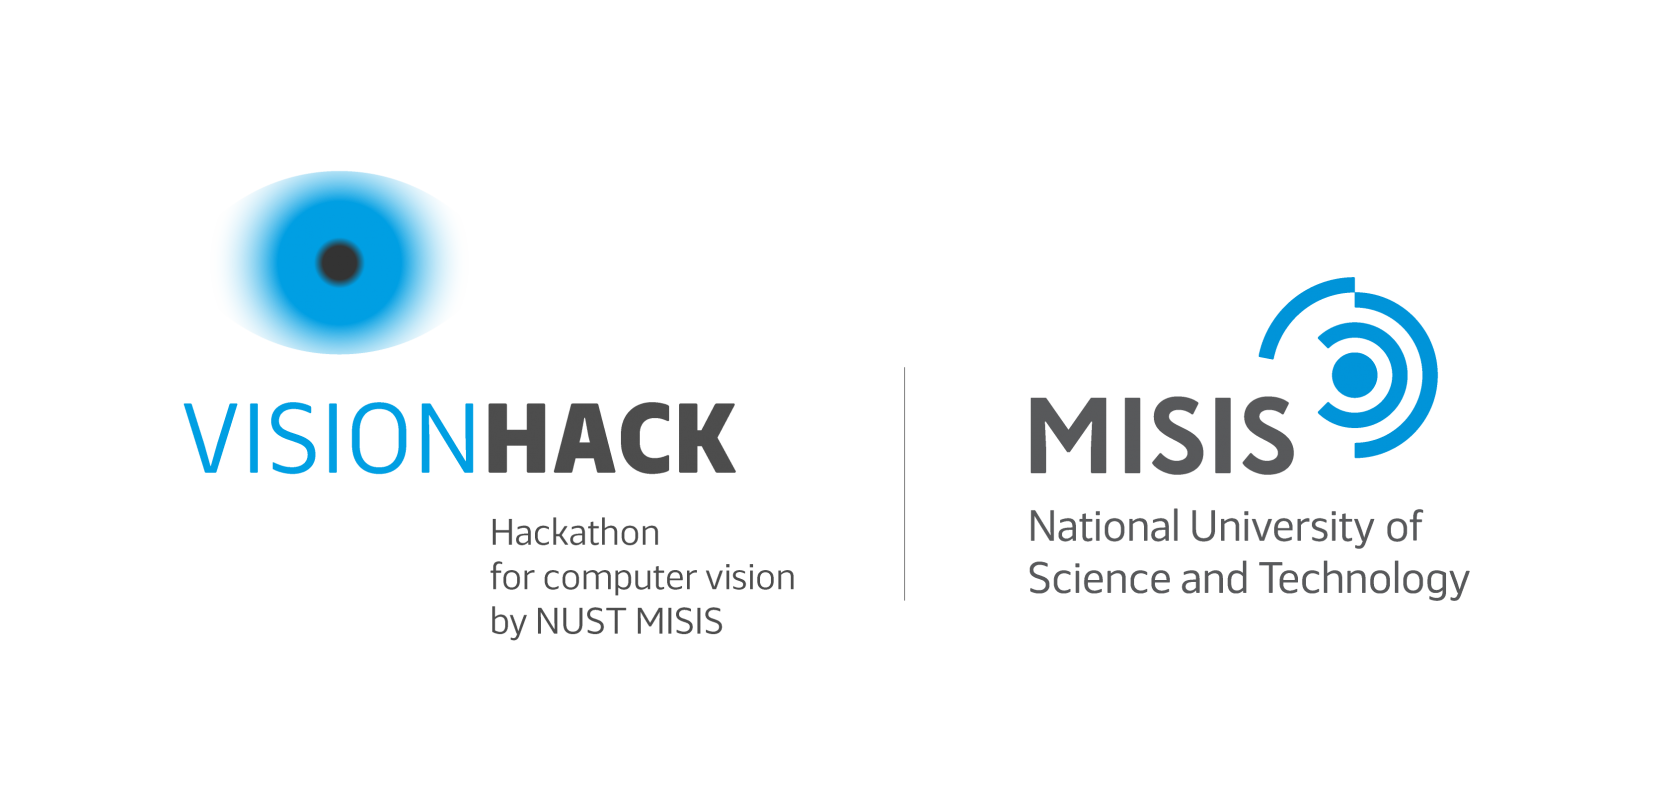 Newlms misis. Национальный исследовательский университет «МИСИС» логотип. Misis логотип. • Университет науки и технологий МИСИС лого. НИТУ МИСИС логотип без фона.